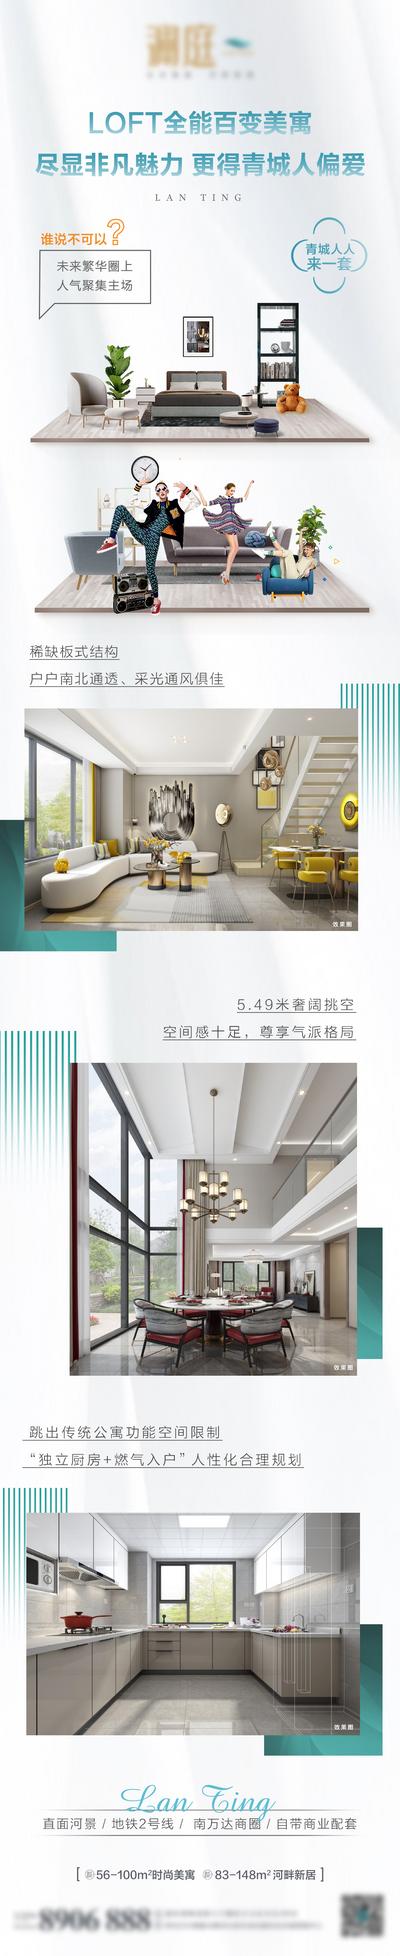 南门网 专题设计 长图 房地产 LOFT 公寓 价值点 卖点 复式 双层 家居 样板间